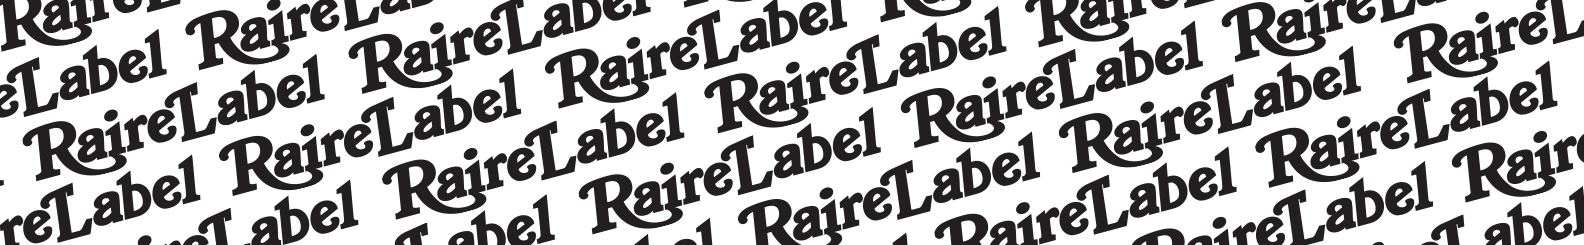 Raire Label's profile banner